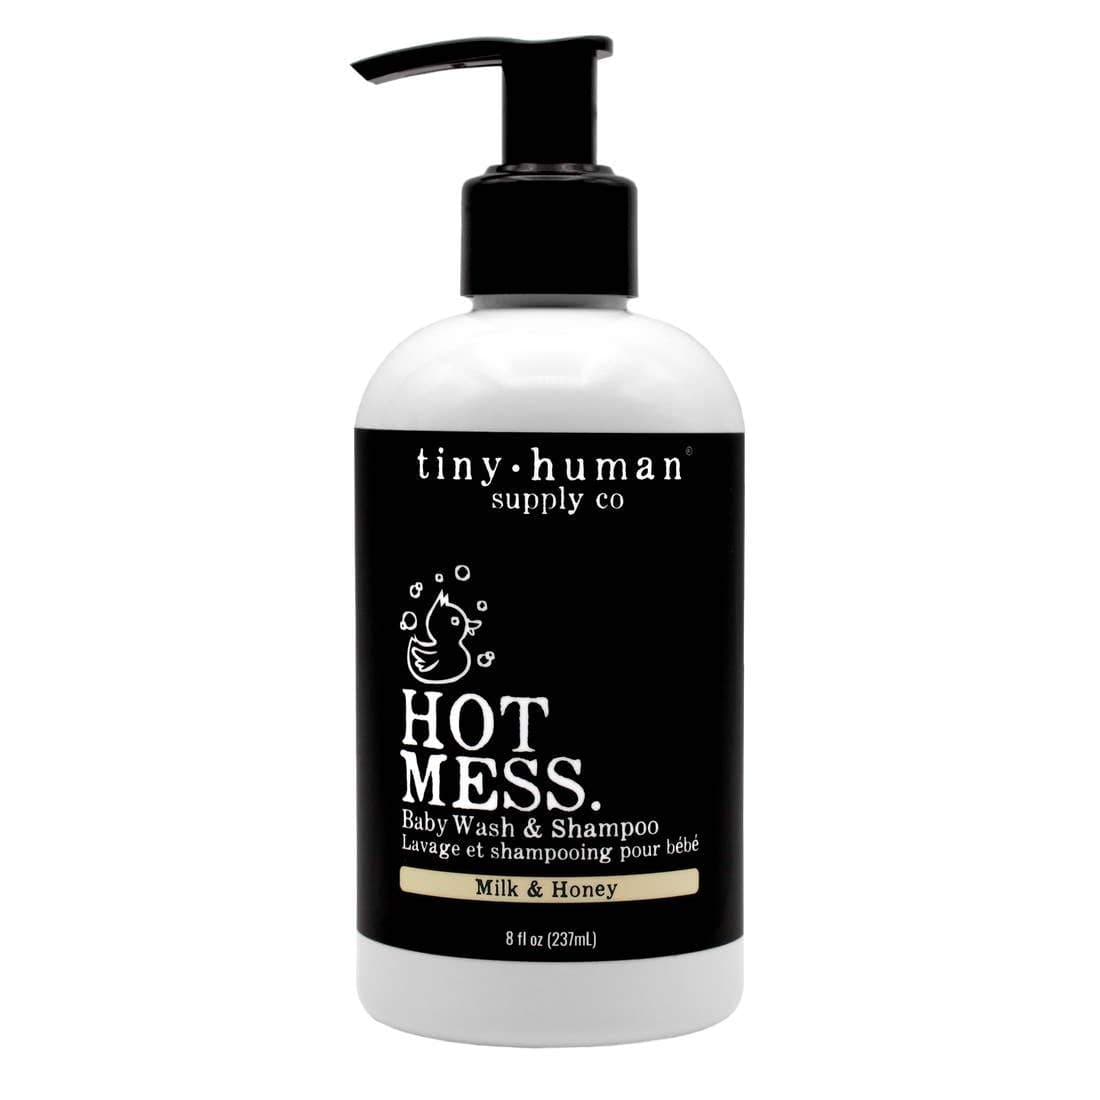 Tiny Human Supply Co. Shampoo and Baby Wash Milk & Honey - HoneyBug 